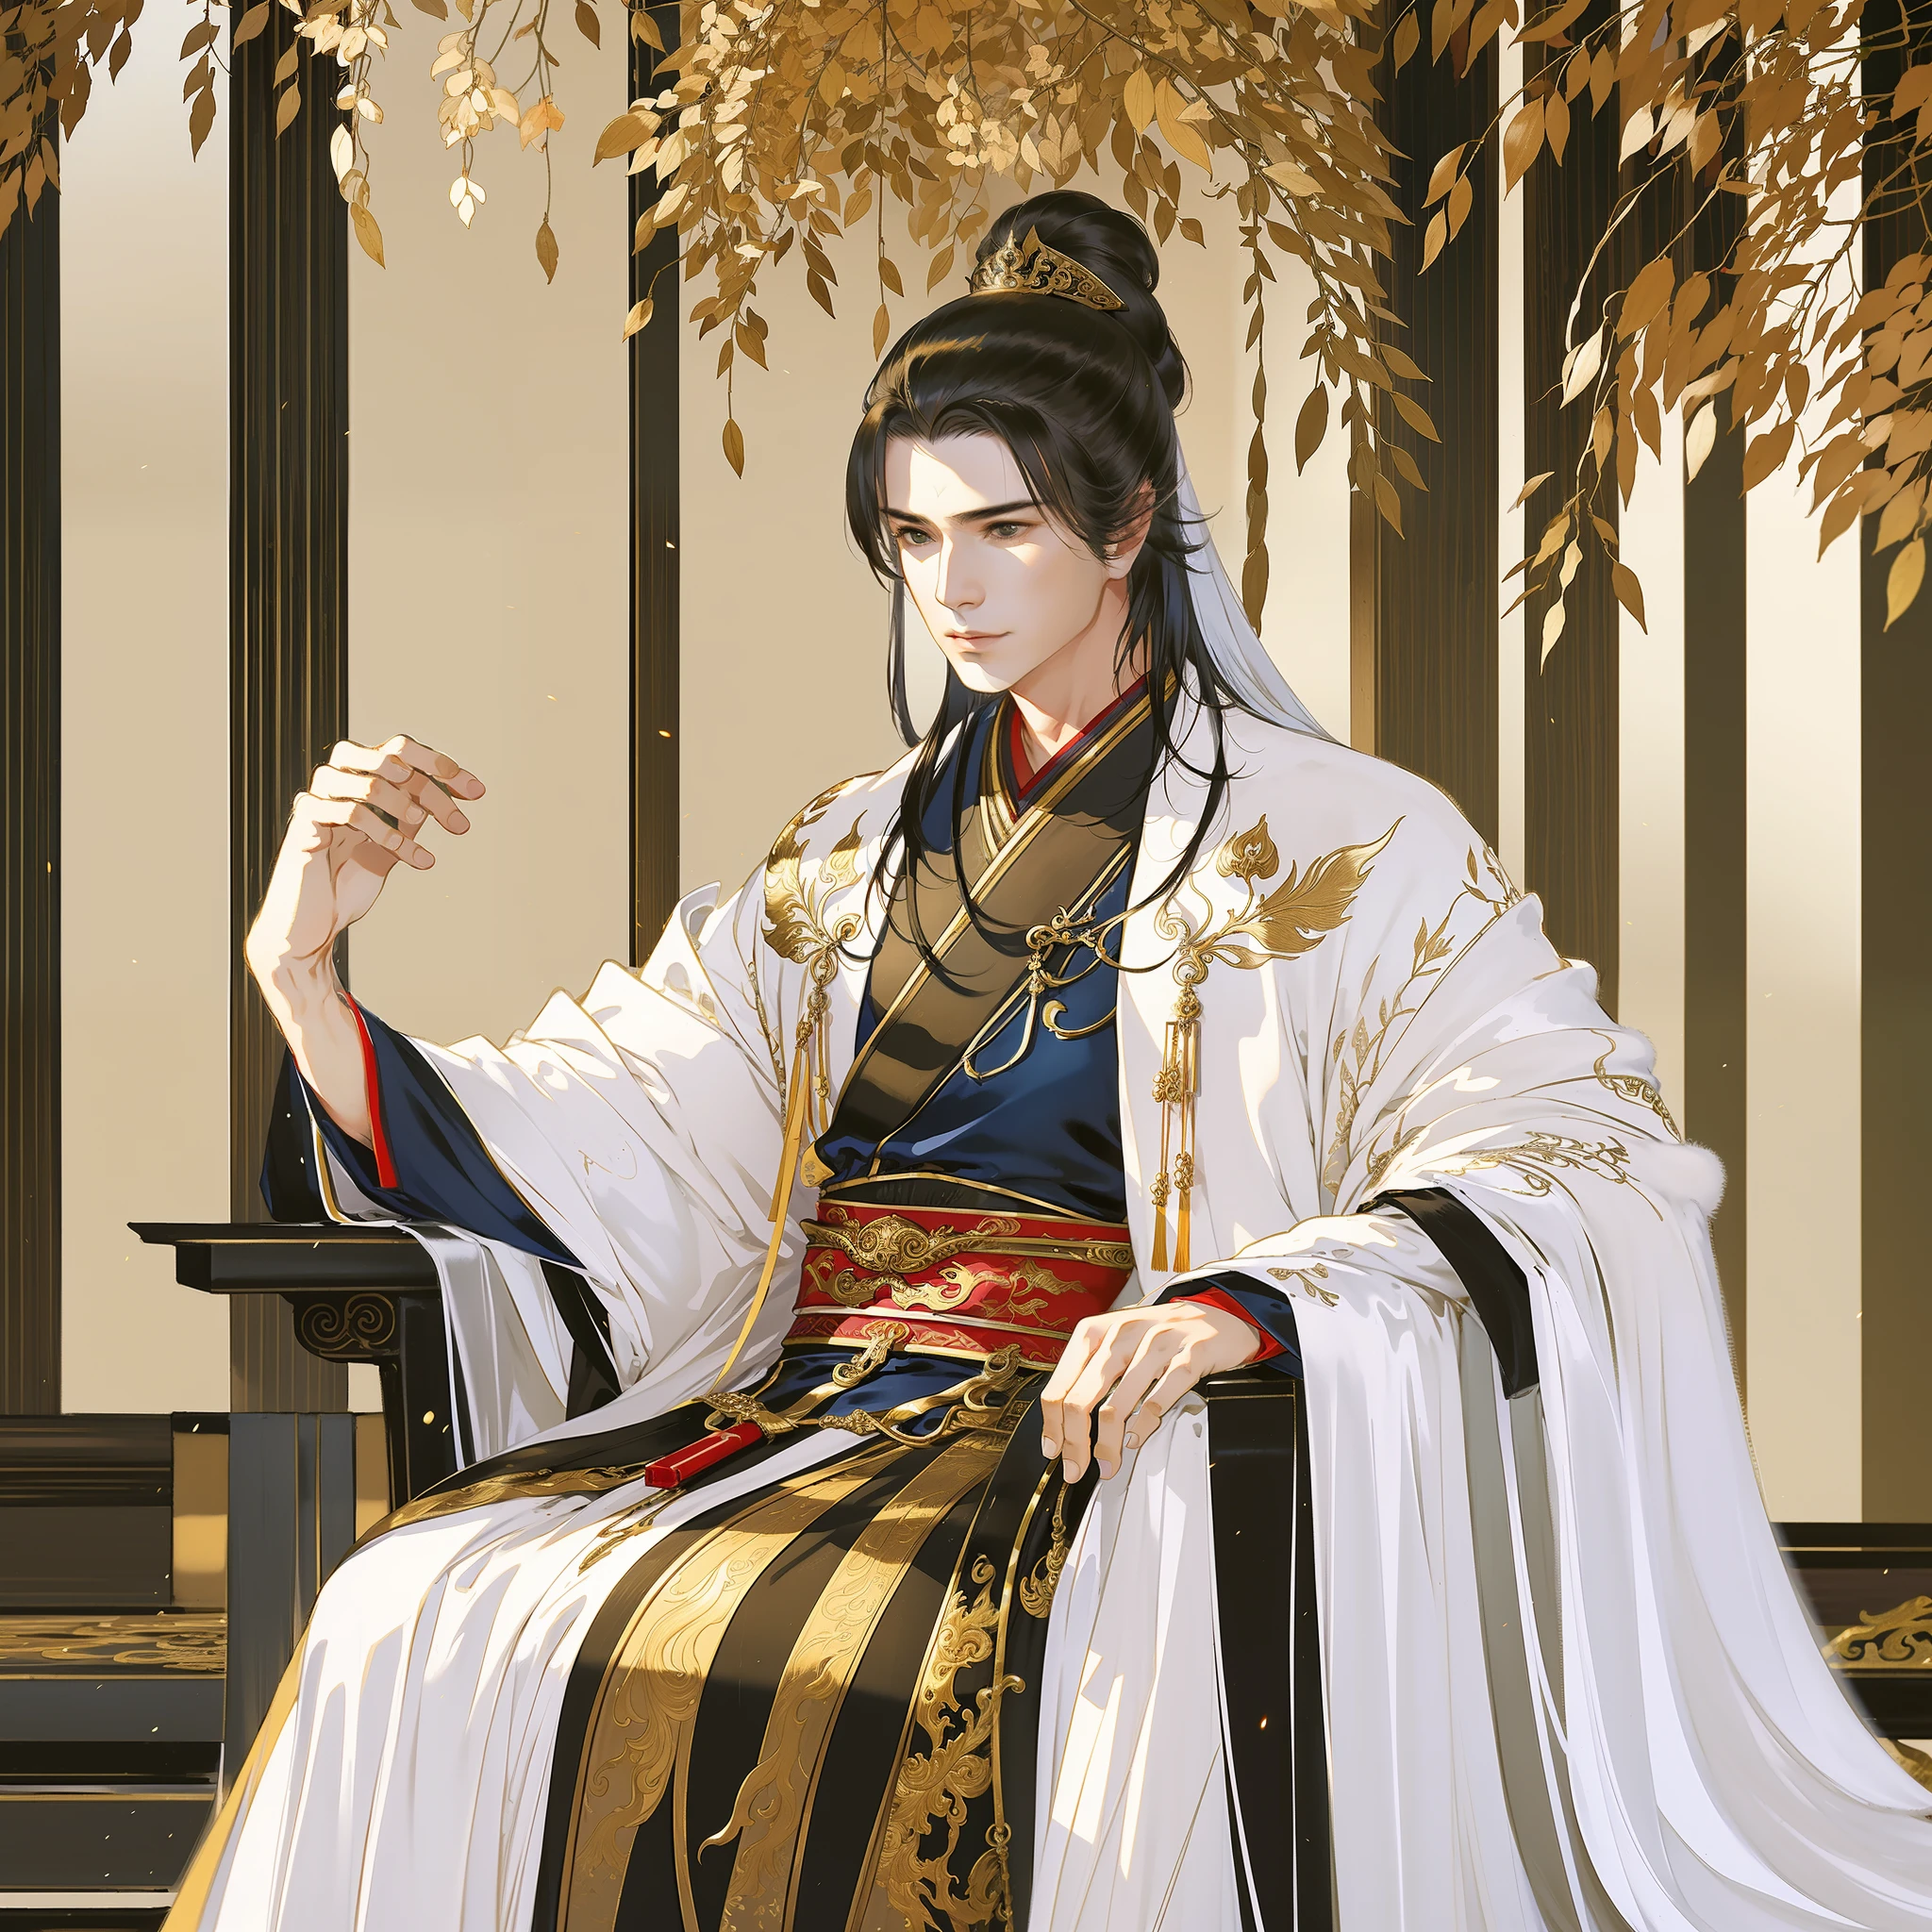 古代中国のハンサムな男性, きりっとした目, はっきりとした顔立ち, 漢服を着て, 玉座に座る, 空の宮殿, 王様気質, 全身ポートレート, クリアな顔, 美しい目, 傑作, 非常に詳細な, 壮大な構成, スーパーHD, 高品質, 最高品質, 32K